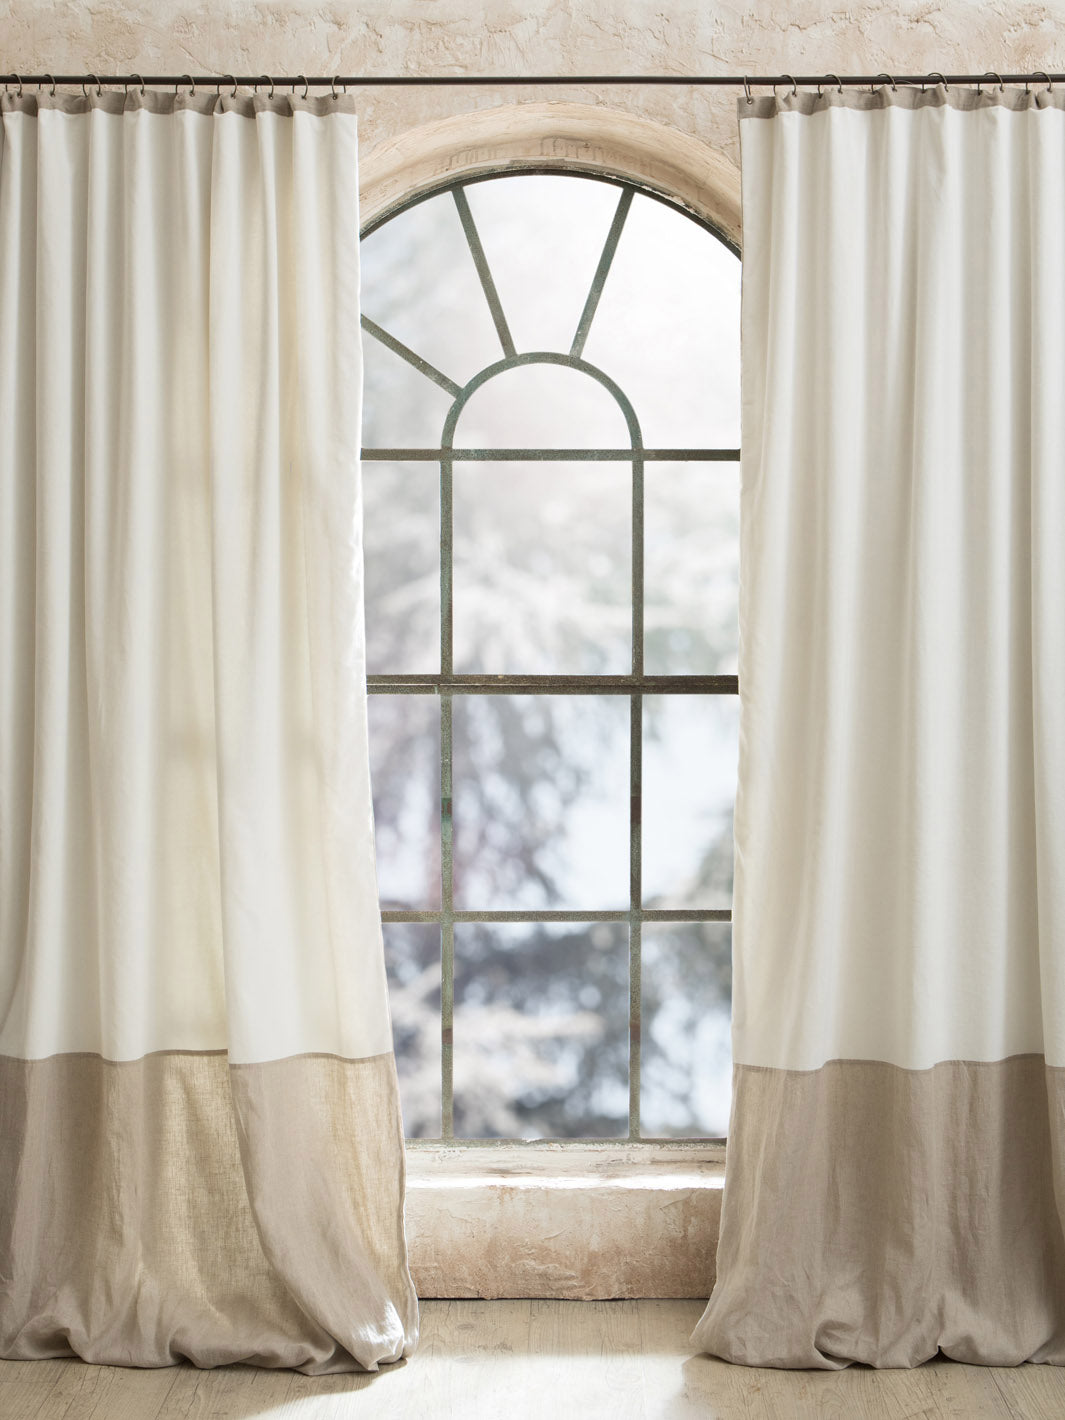 Cortinas blancas, cortinas y cortinas de algodón blanco, cortinas